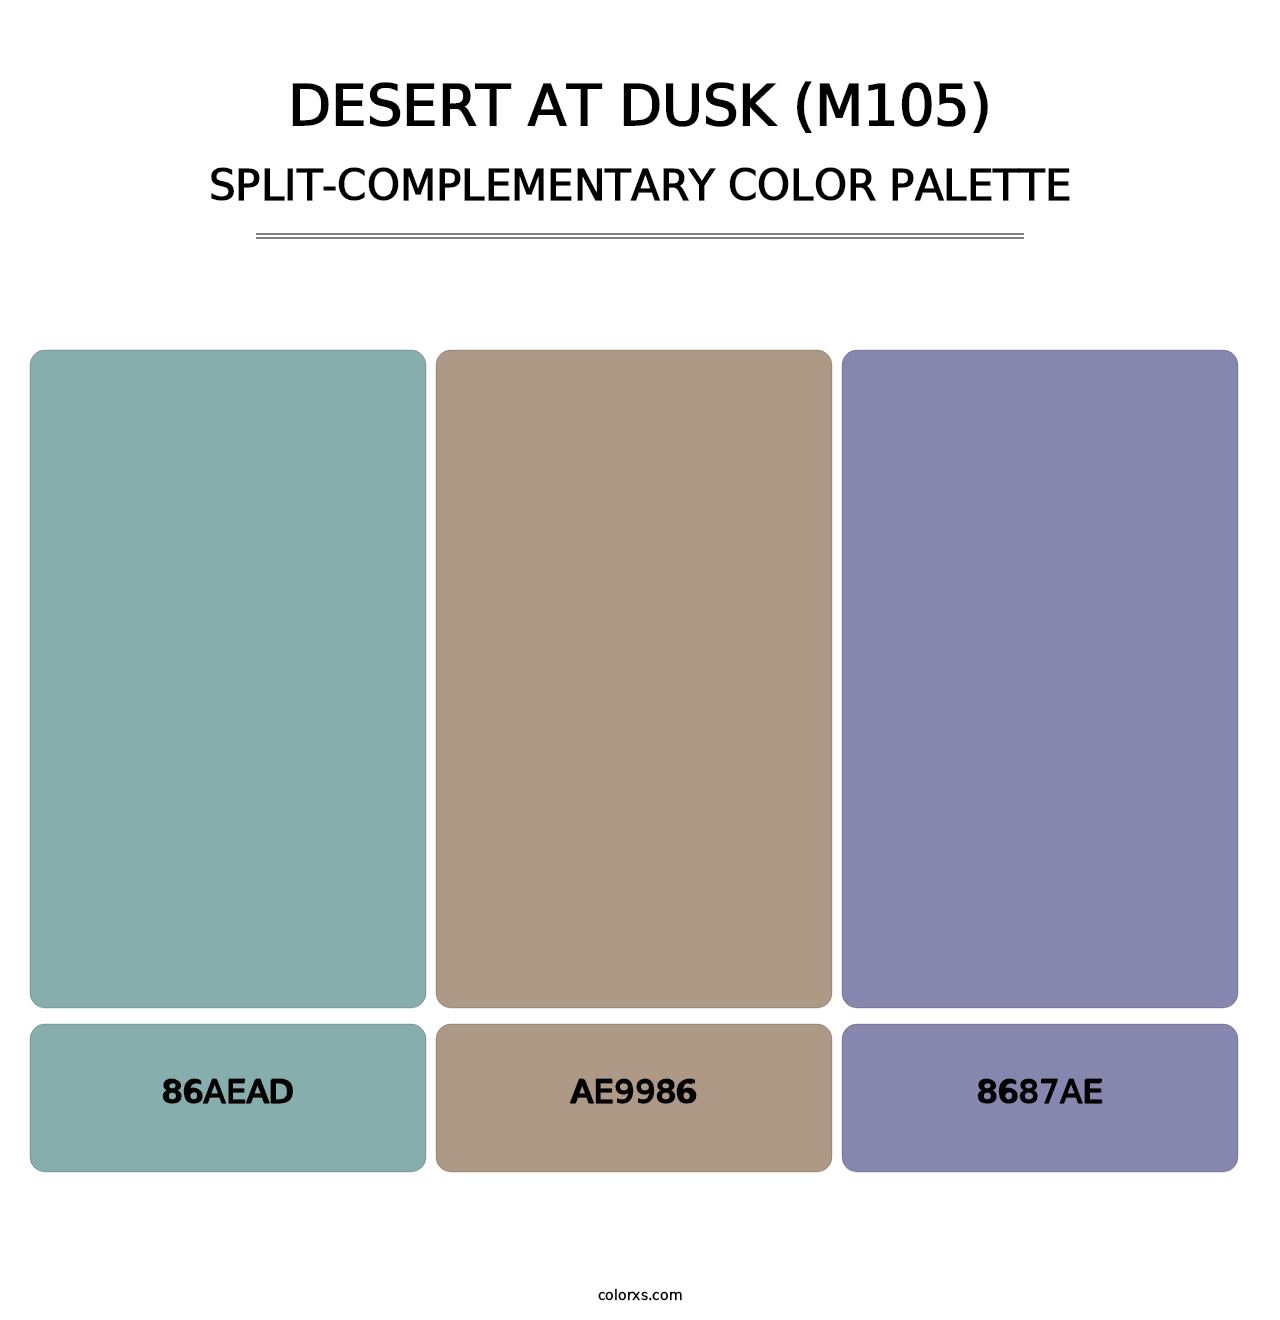 Desert at Dusk (M105) - Split-Complementary Color Palette